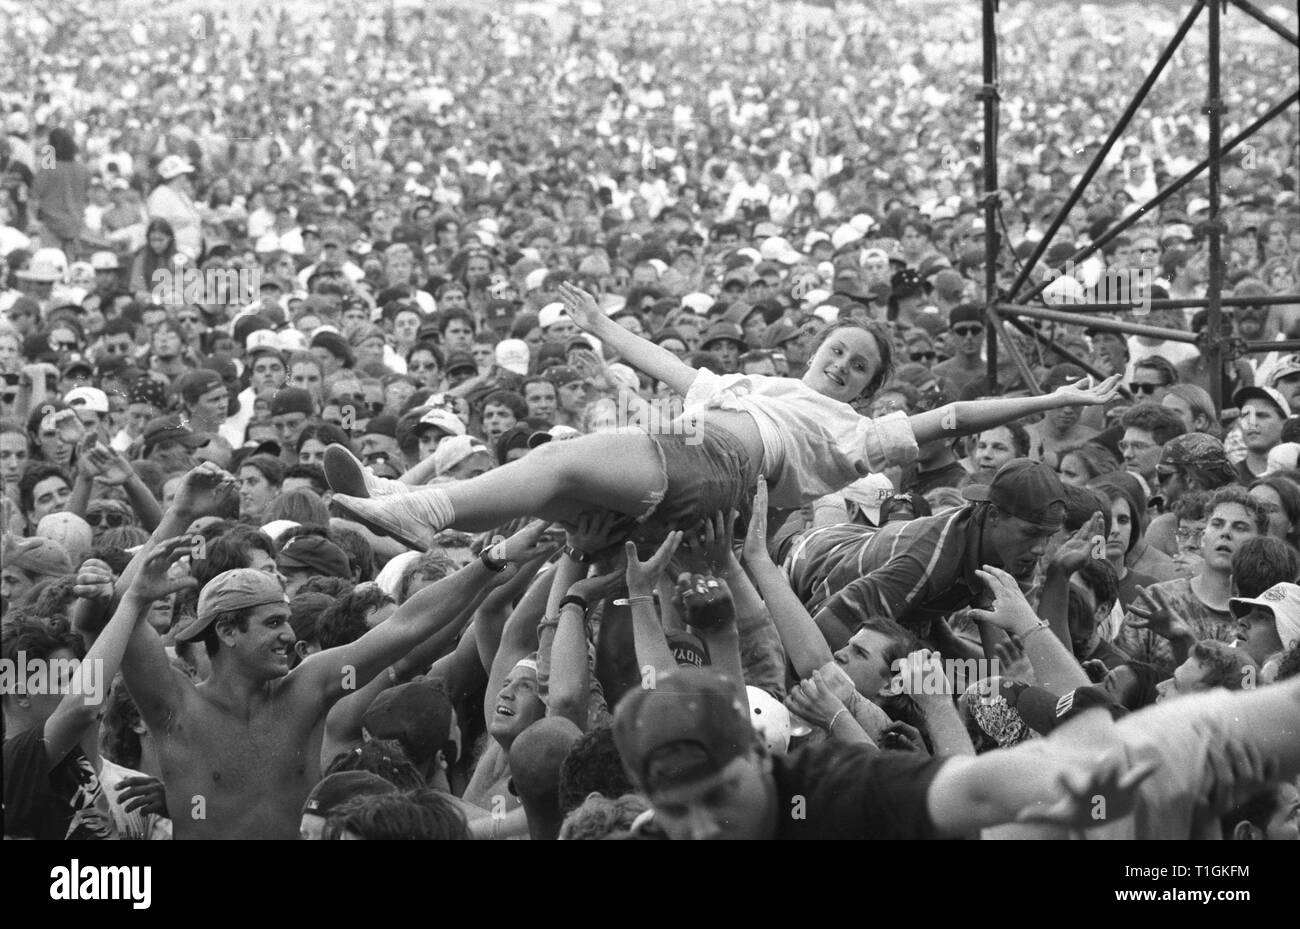 Un ventilateur est montré concert crowd surfing pendant Woodstock 94' à Saugerties, New York. Banque D'Images